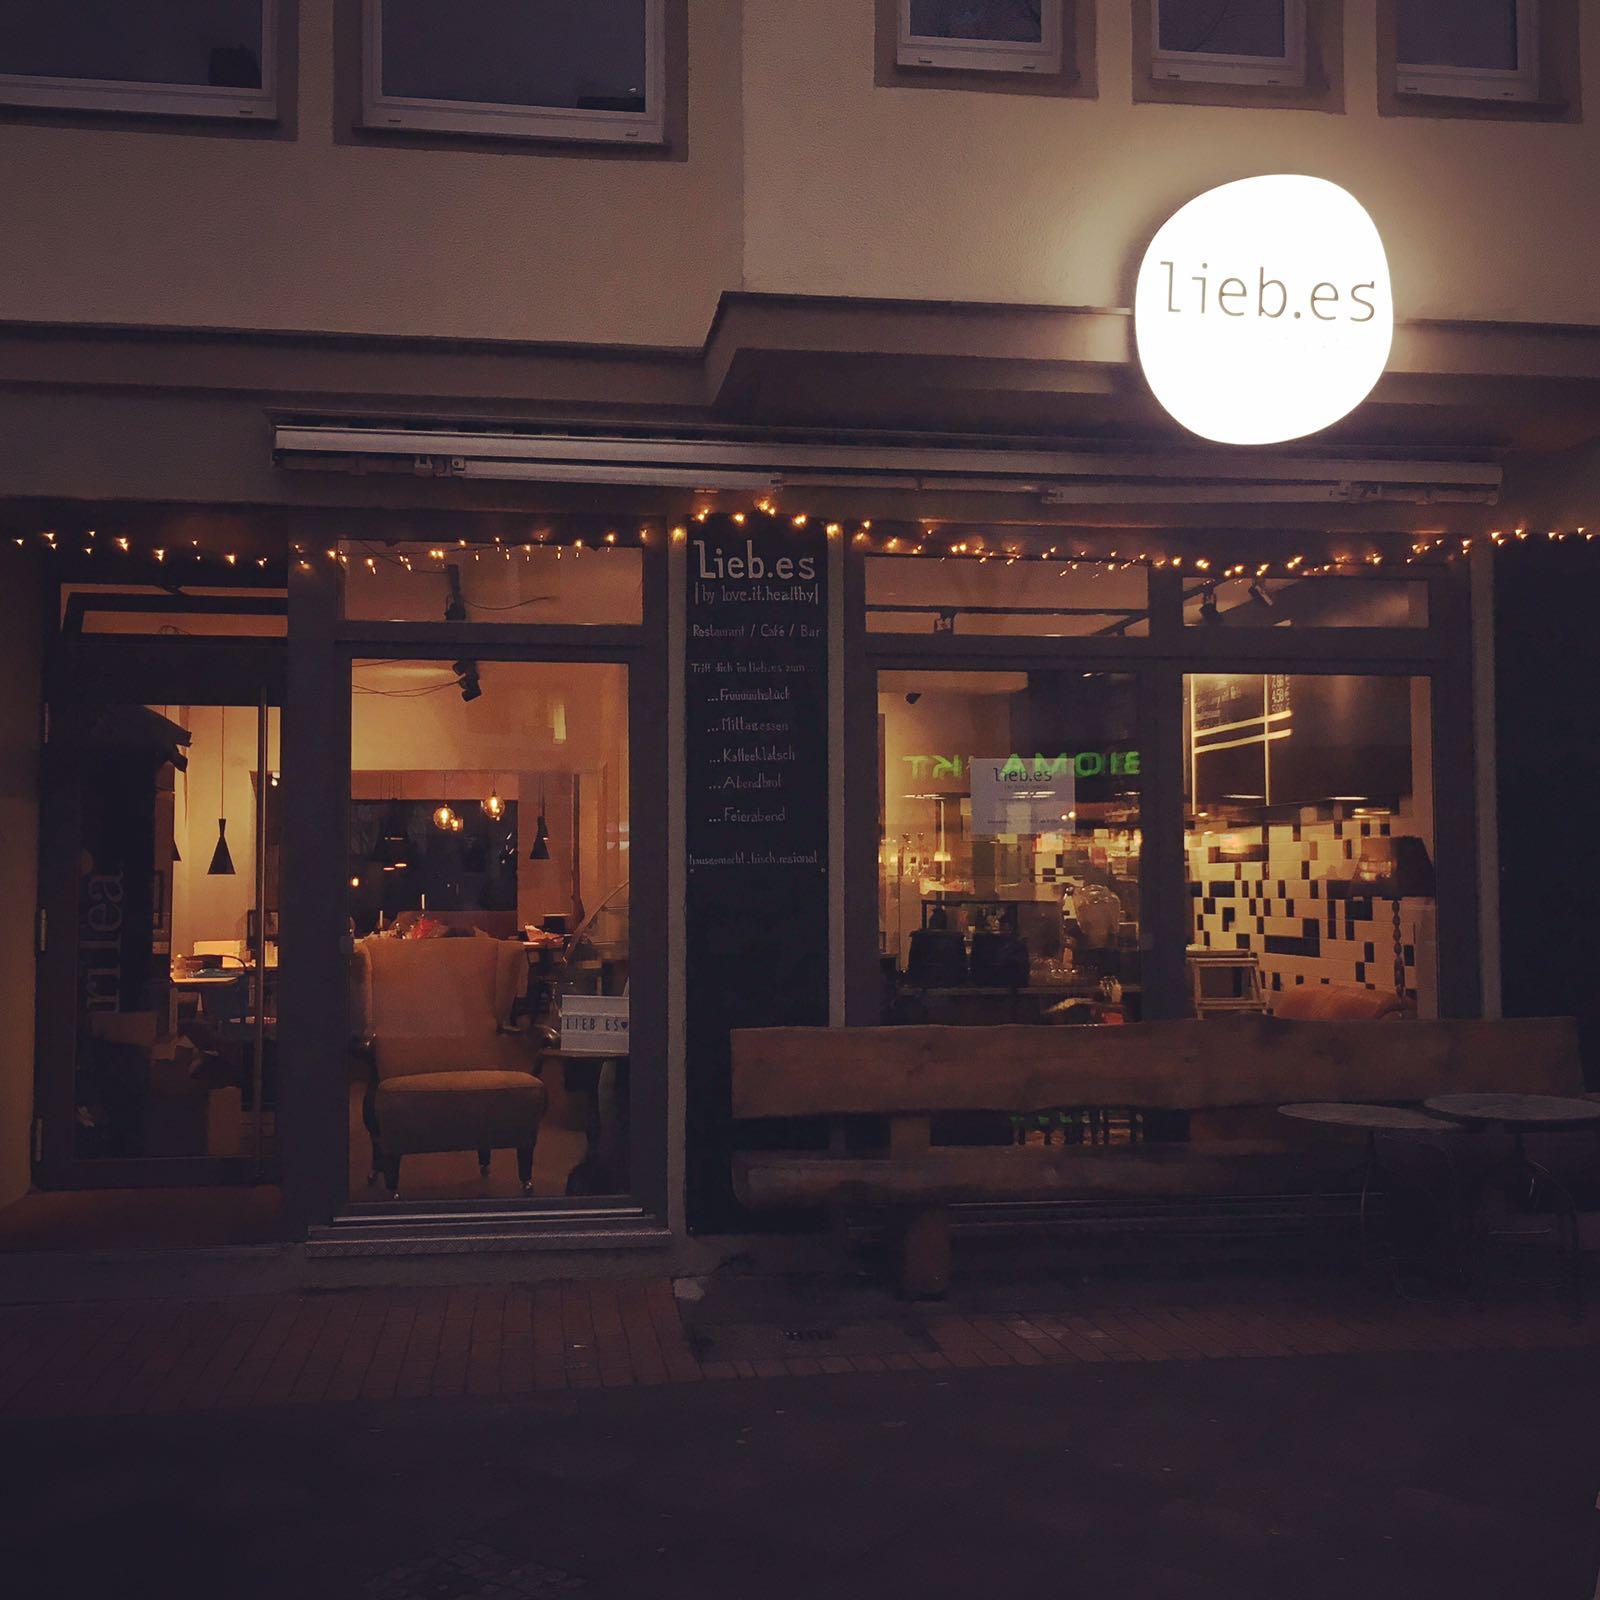 Restaurant "lieb.es Café Restaurant" in Hannover